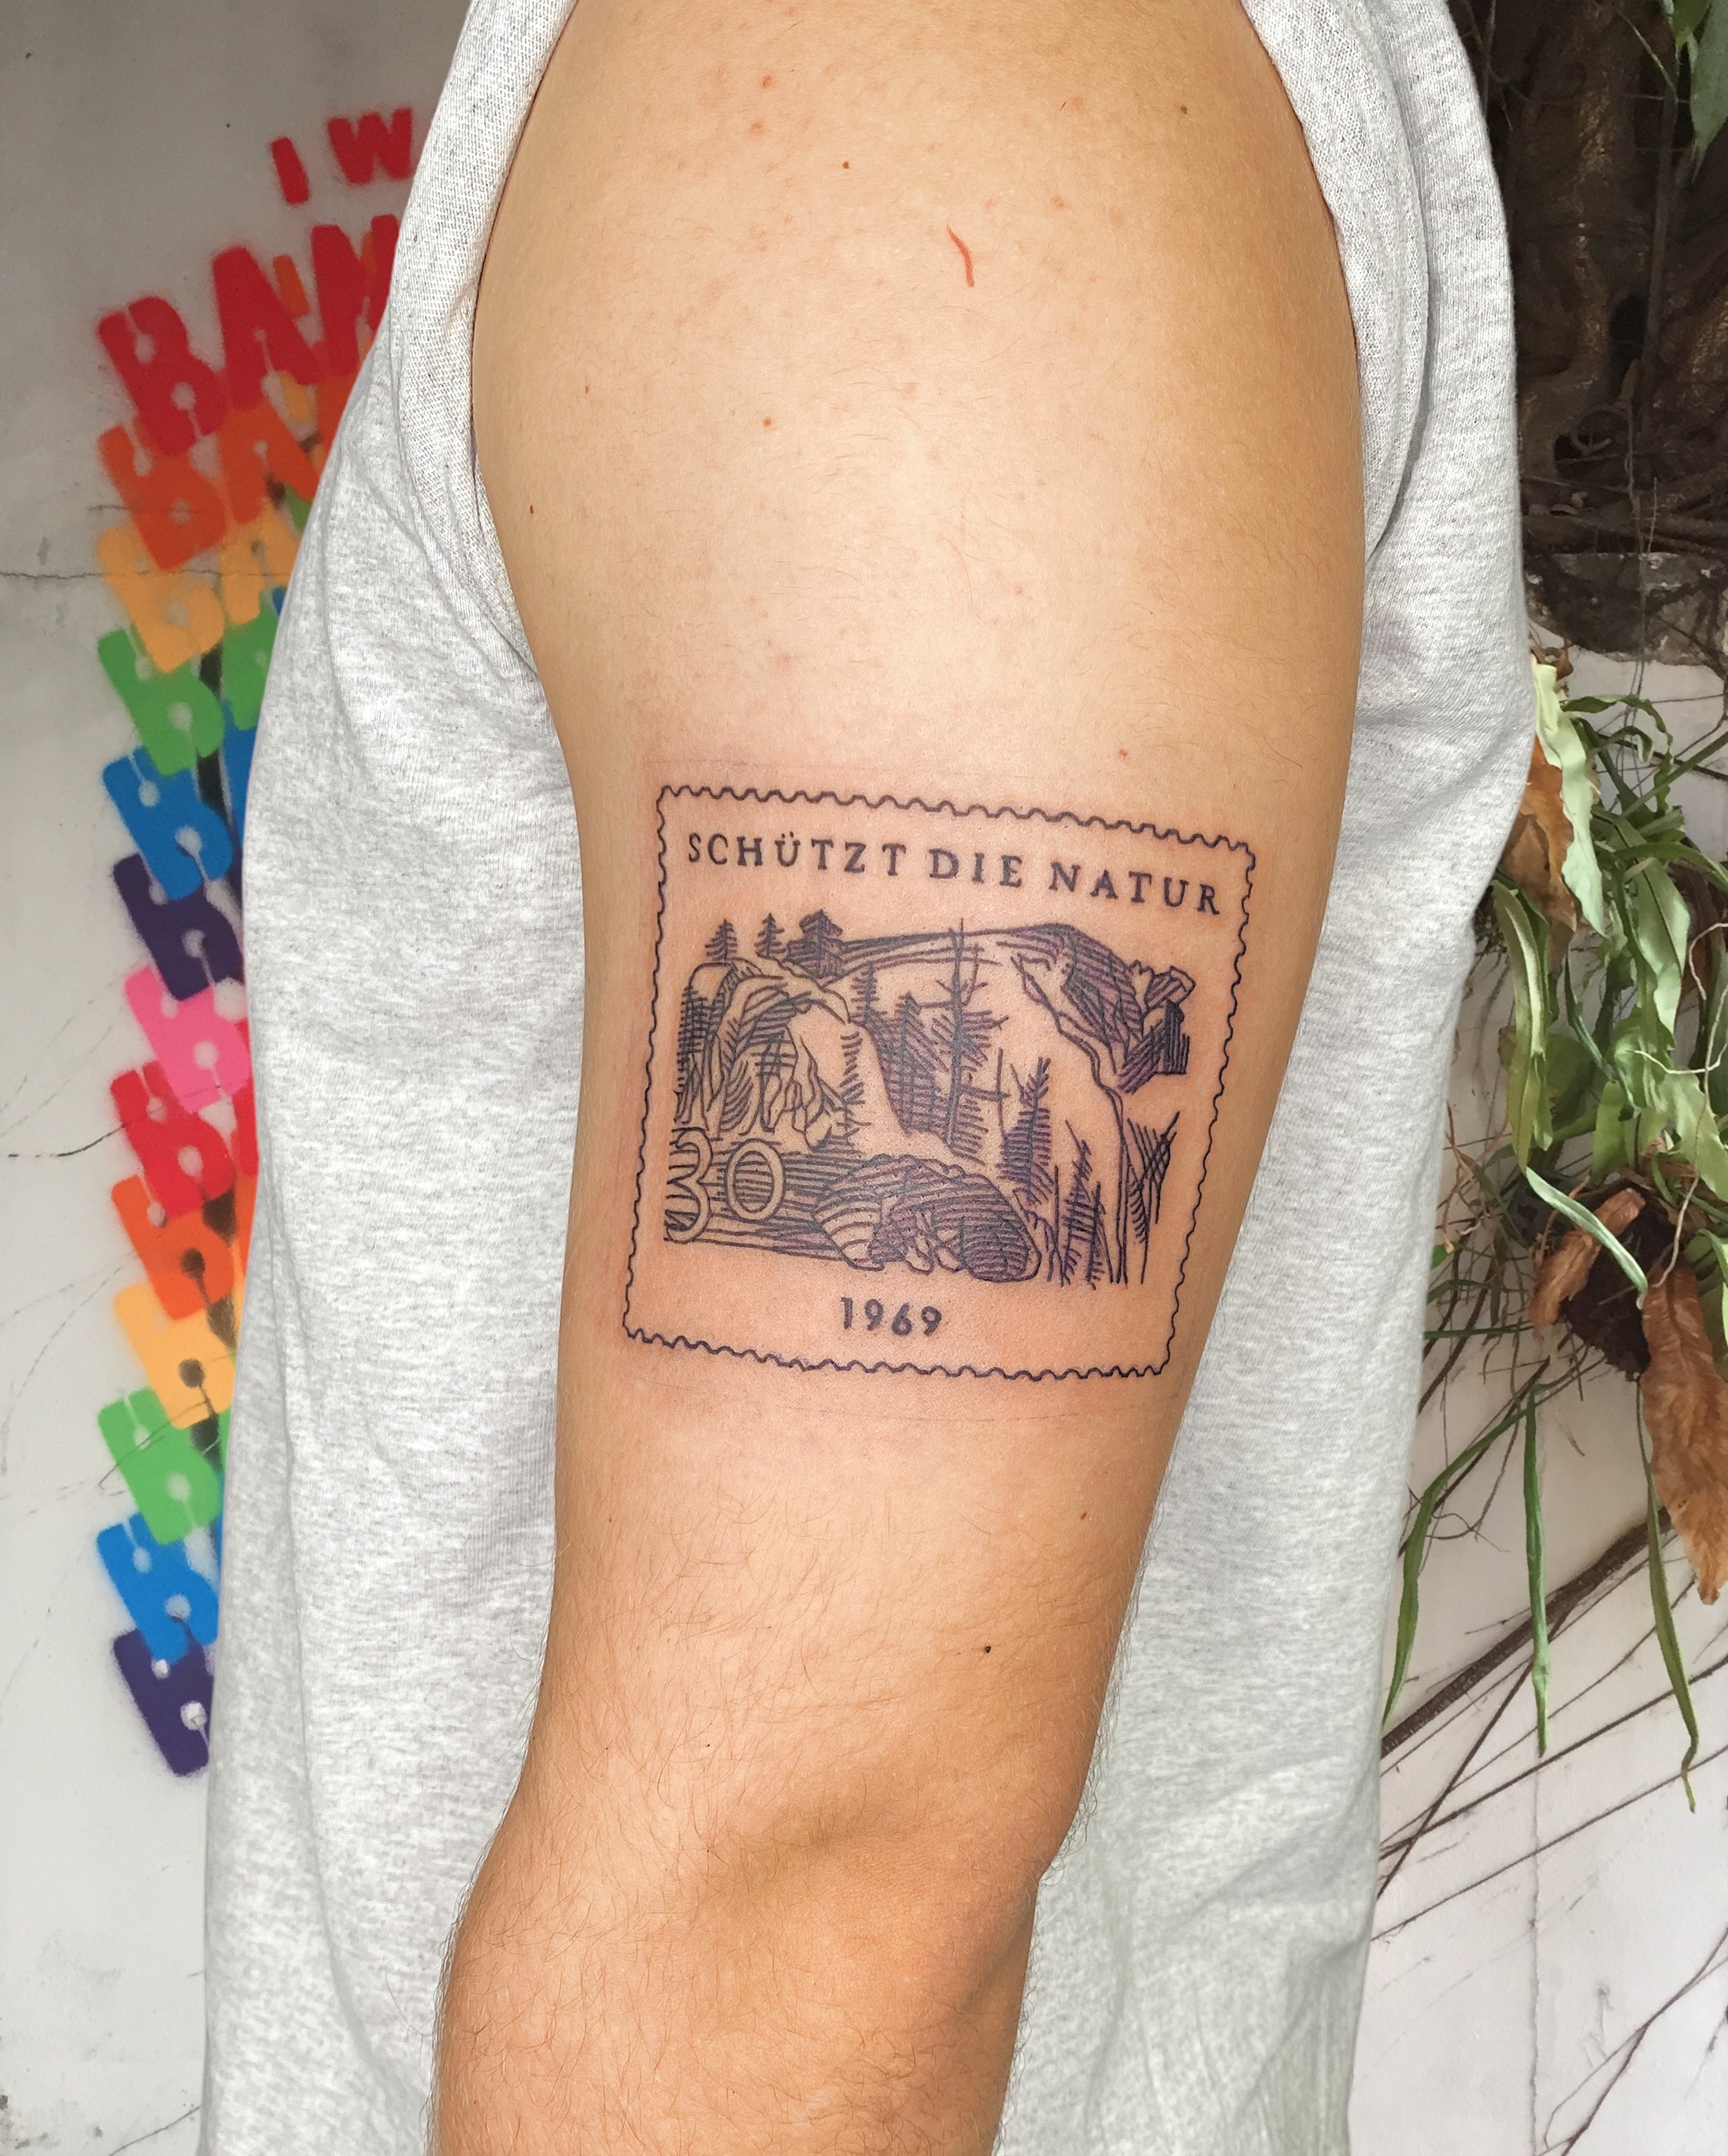 tattoo of a stamp schutzt die nature 1969 black ink on upper arm.JPG